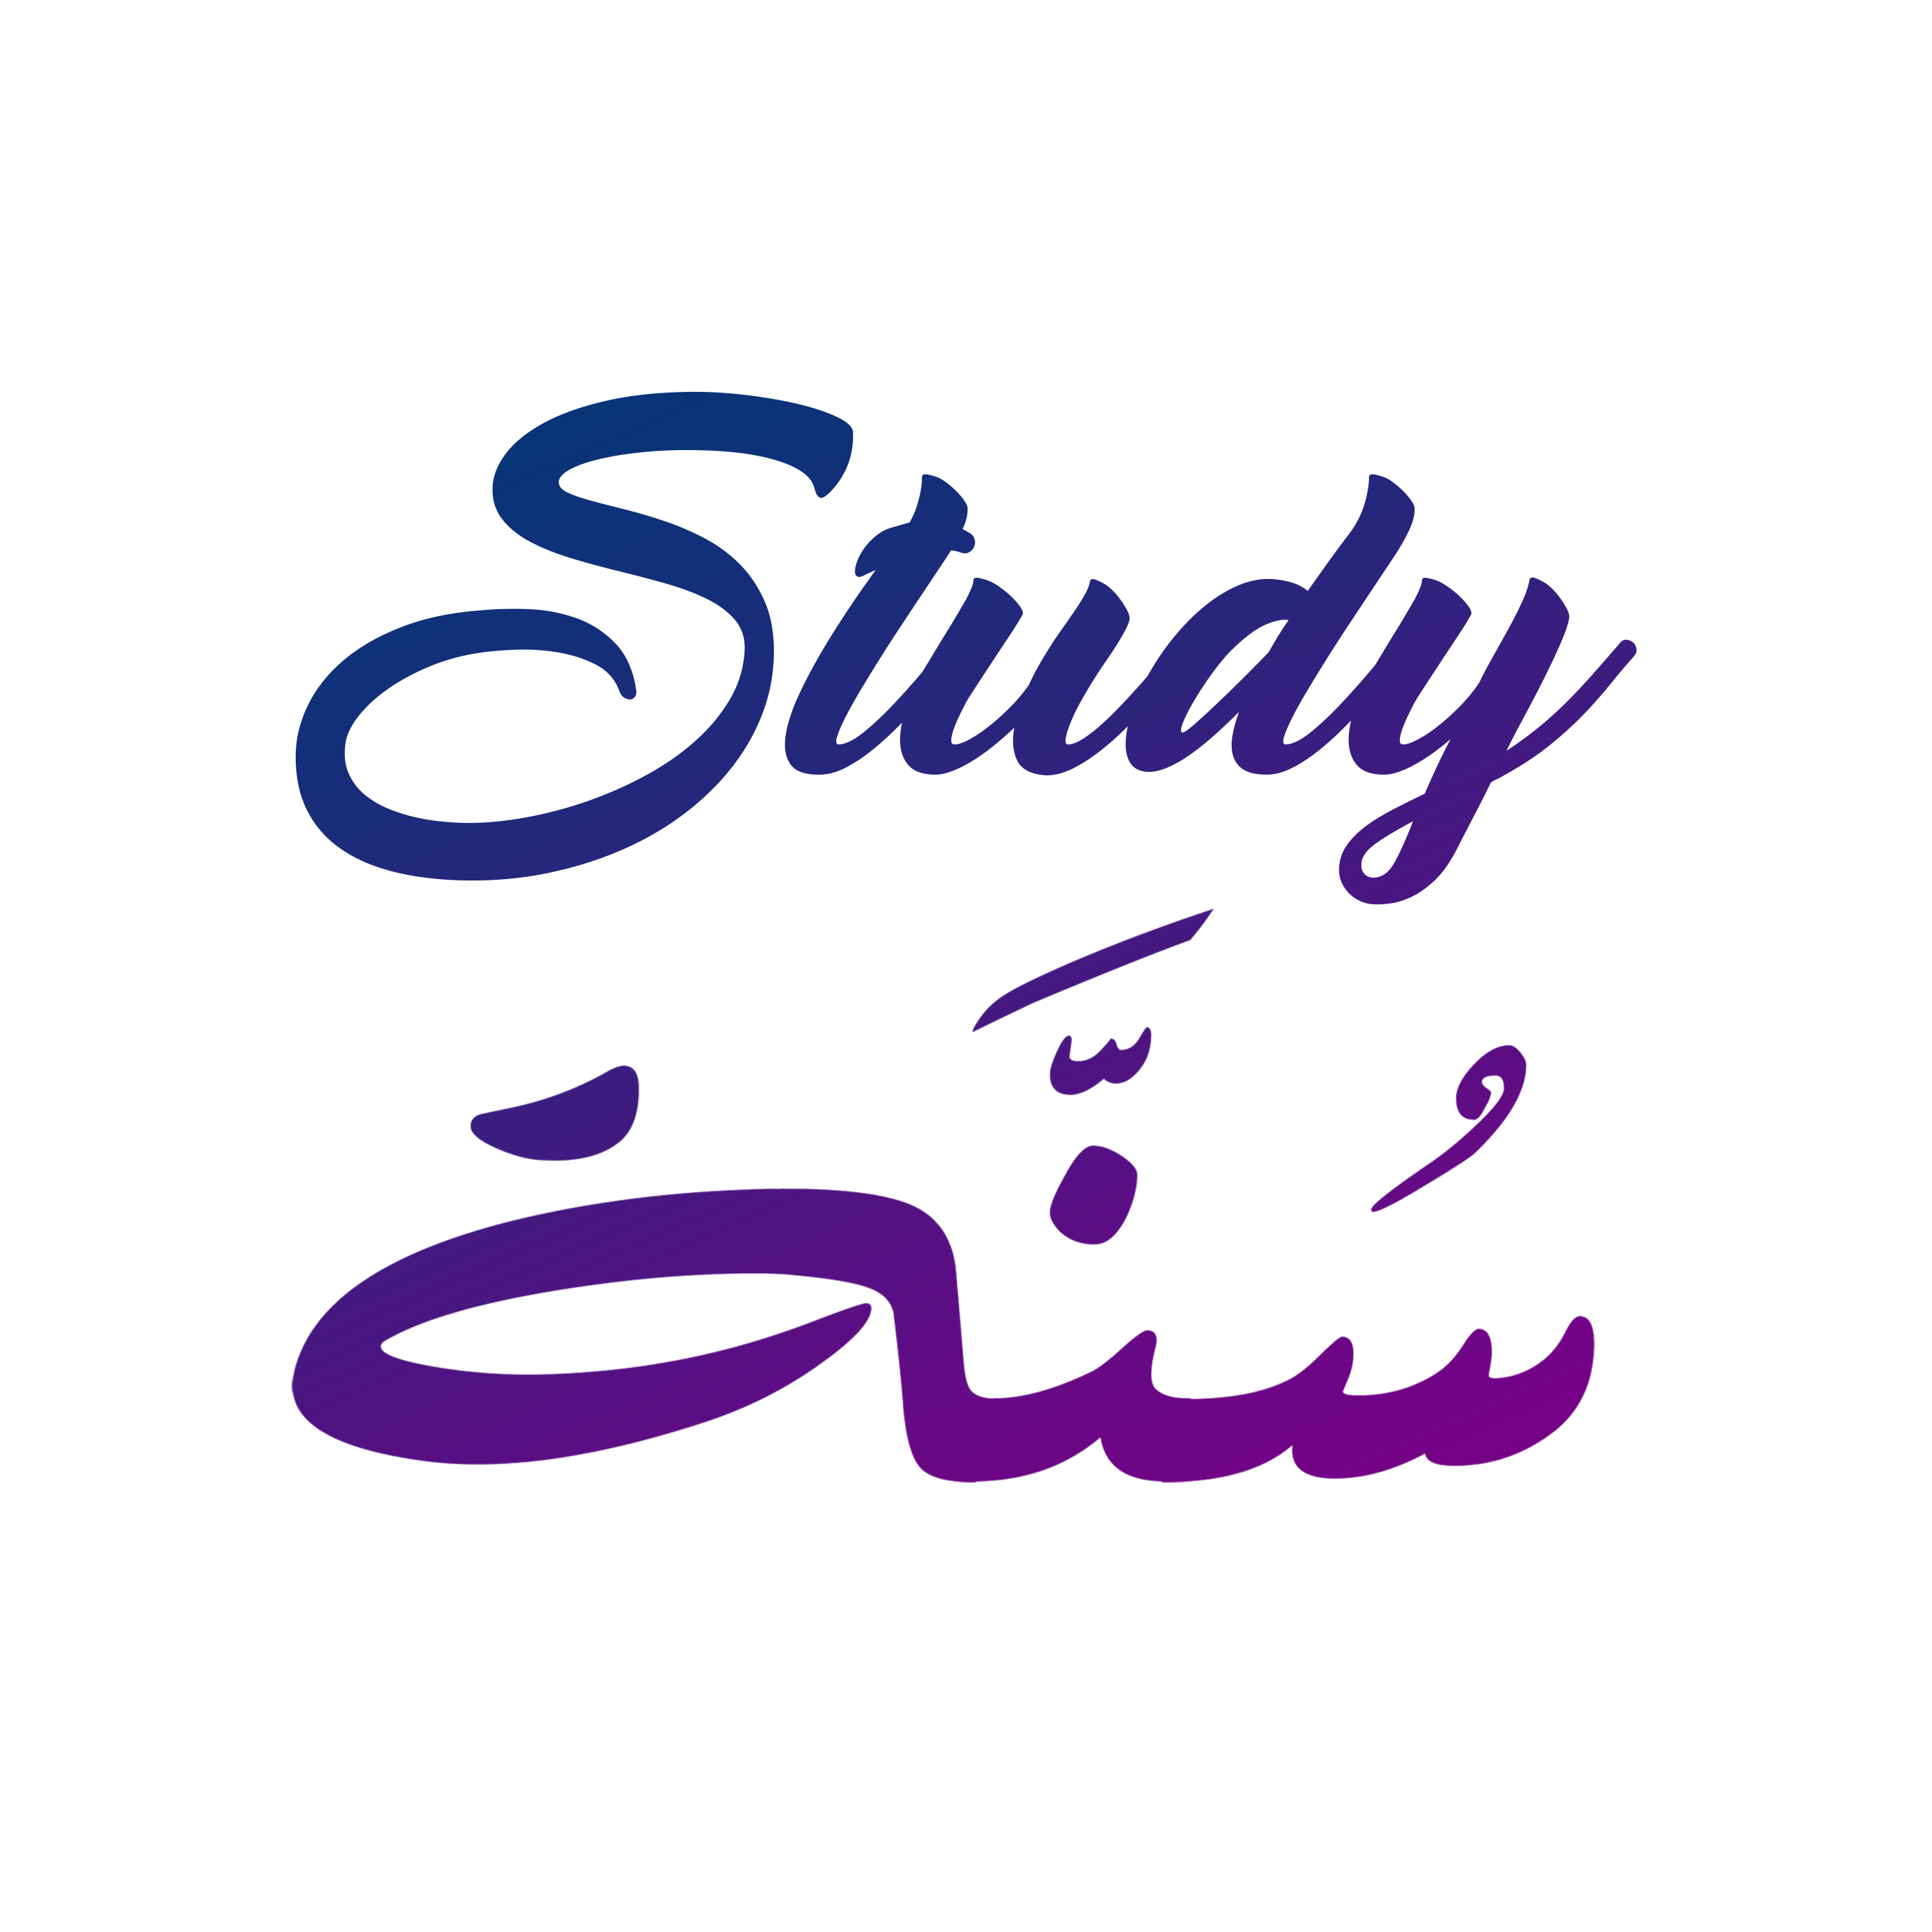 StudySunnah